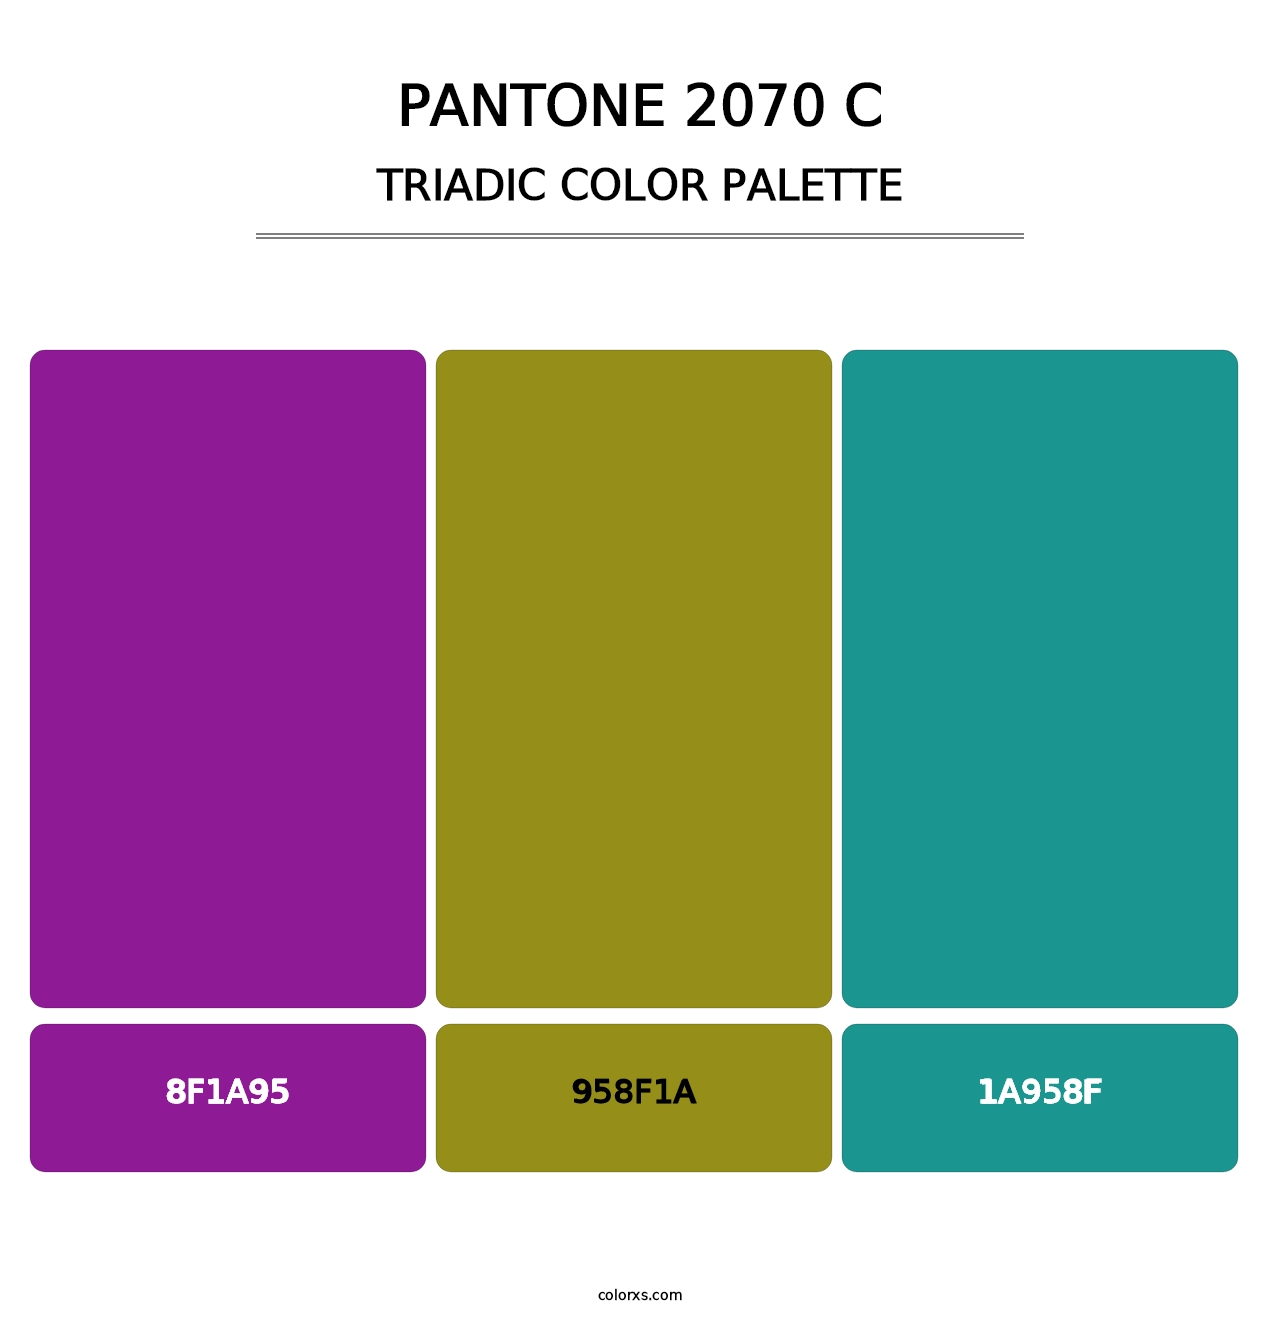 PANTONE 2070 C - Triadic Color Palette